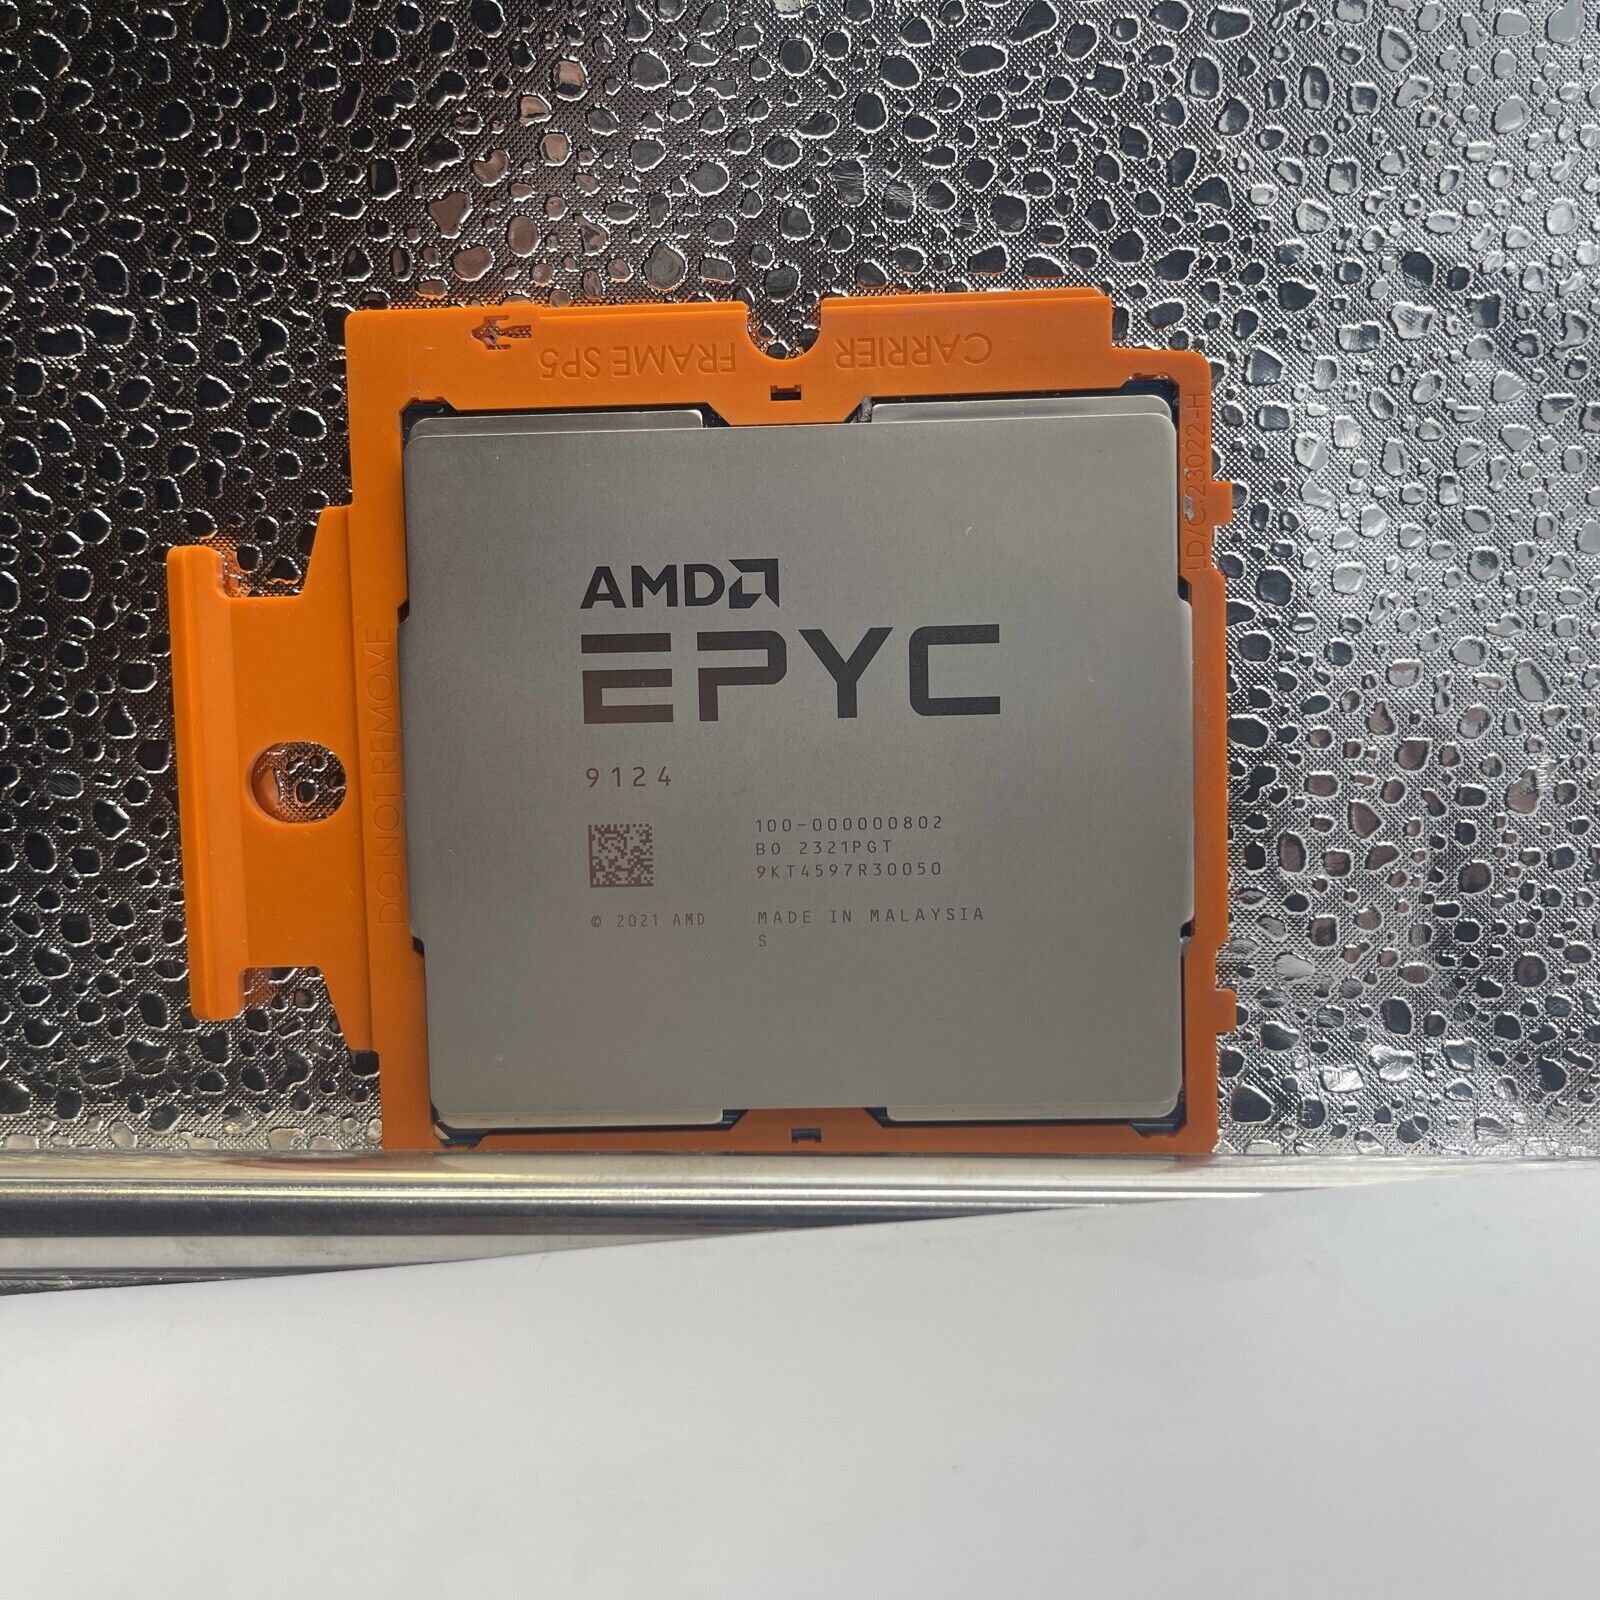 AMD EPYC 9124 16C 3.0GHz 64M DDR5-4800 200W (Dell) (100-000000802-OSTK)